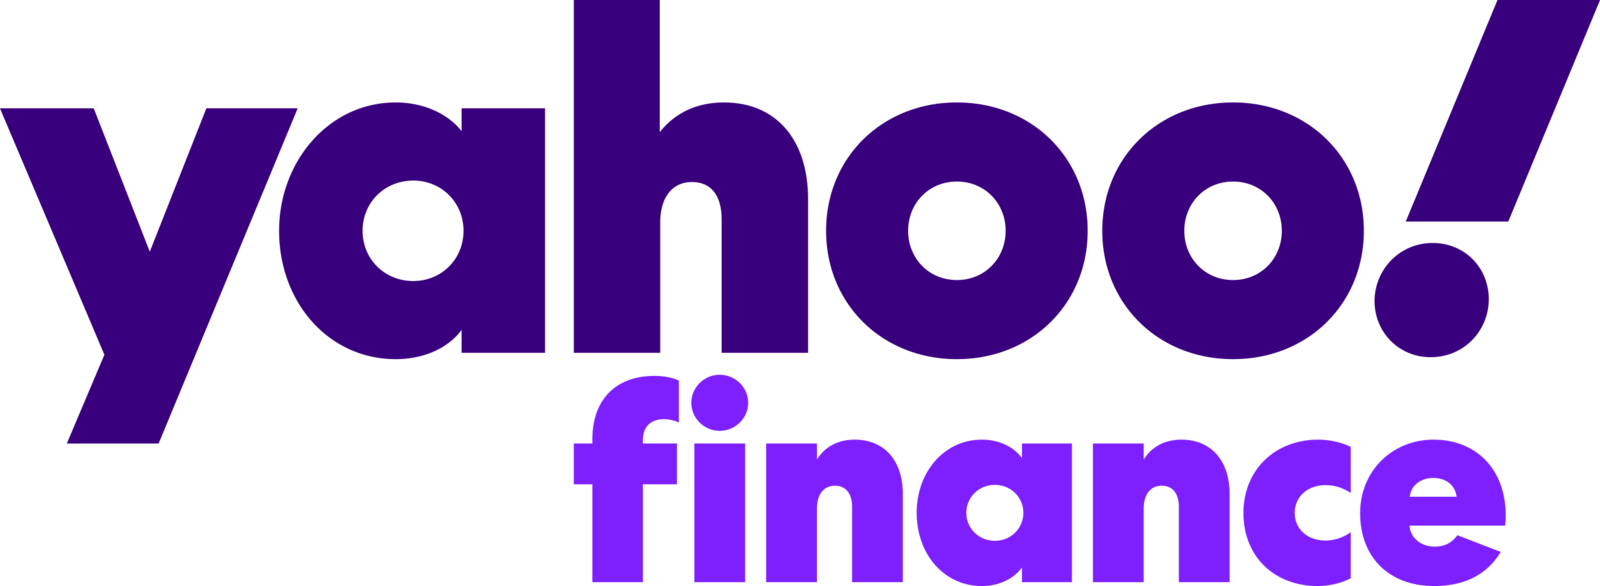 Yahoo Finance Logo 2021